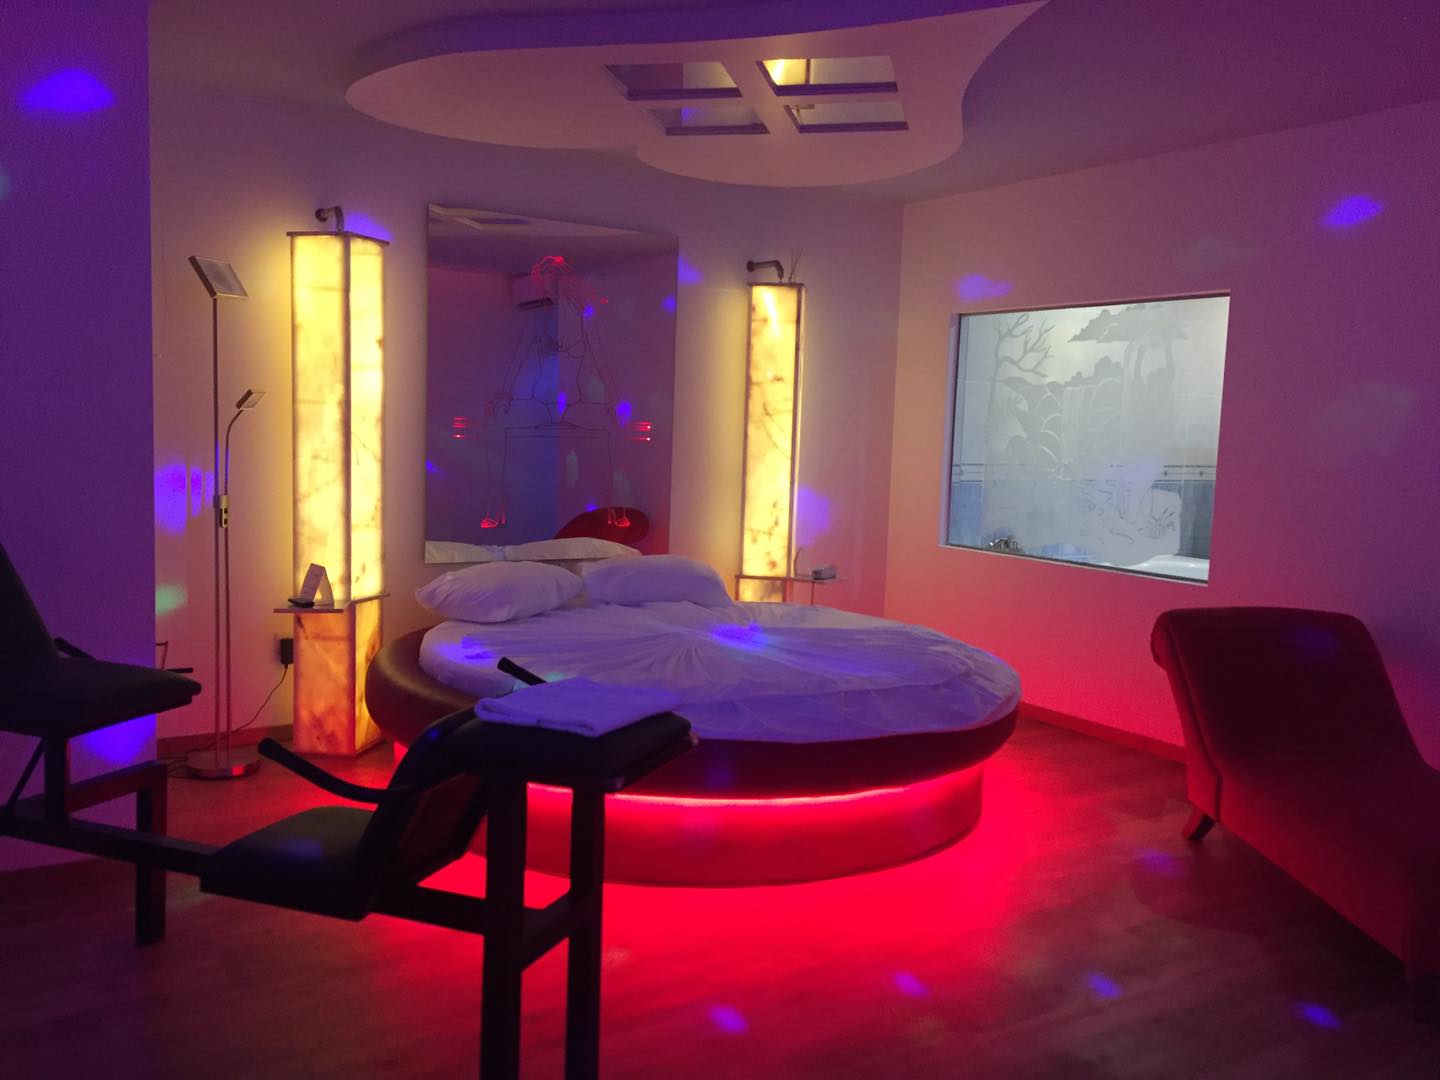 Quarto do Motel D'lirius Azuis com cama redonda, cadeira tântrica, espelhos no tecto e iluminação em tons vermelhos